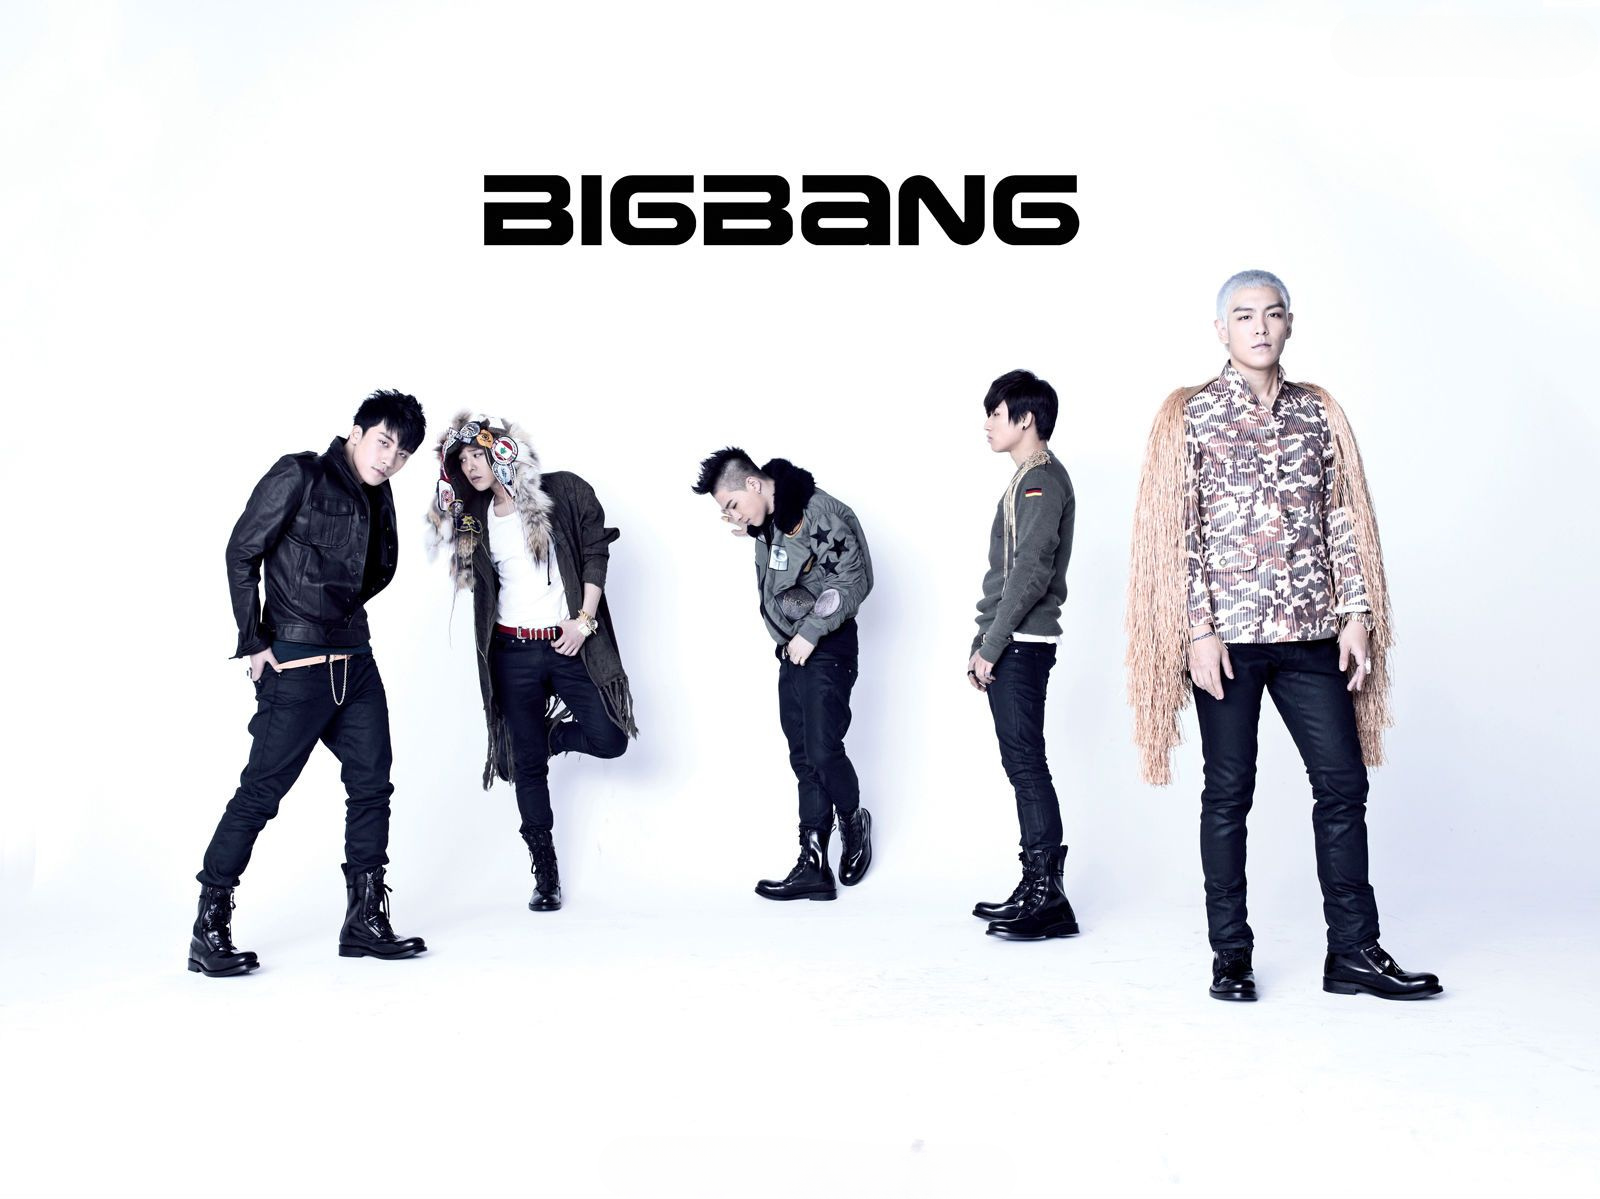 All 5 members of Bigbang: G-Dragon, T.O.P, Taeyang, Daesung, and Seungri